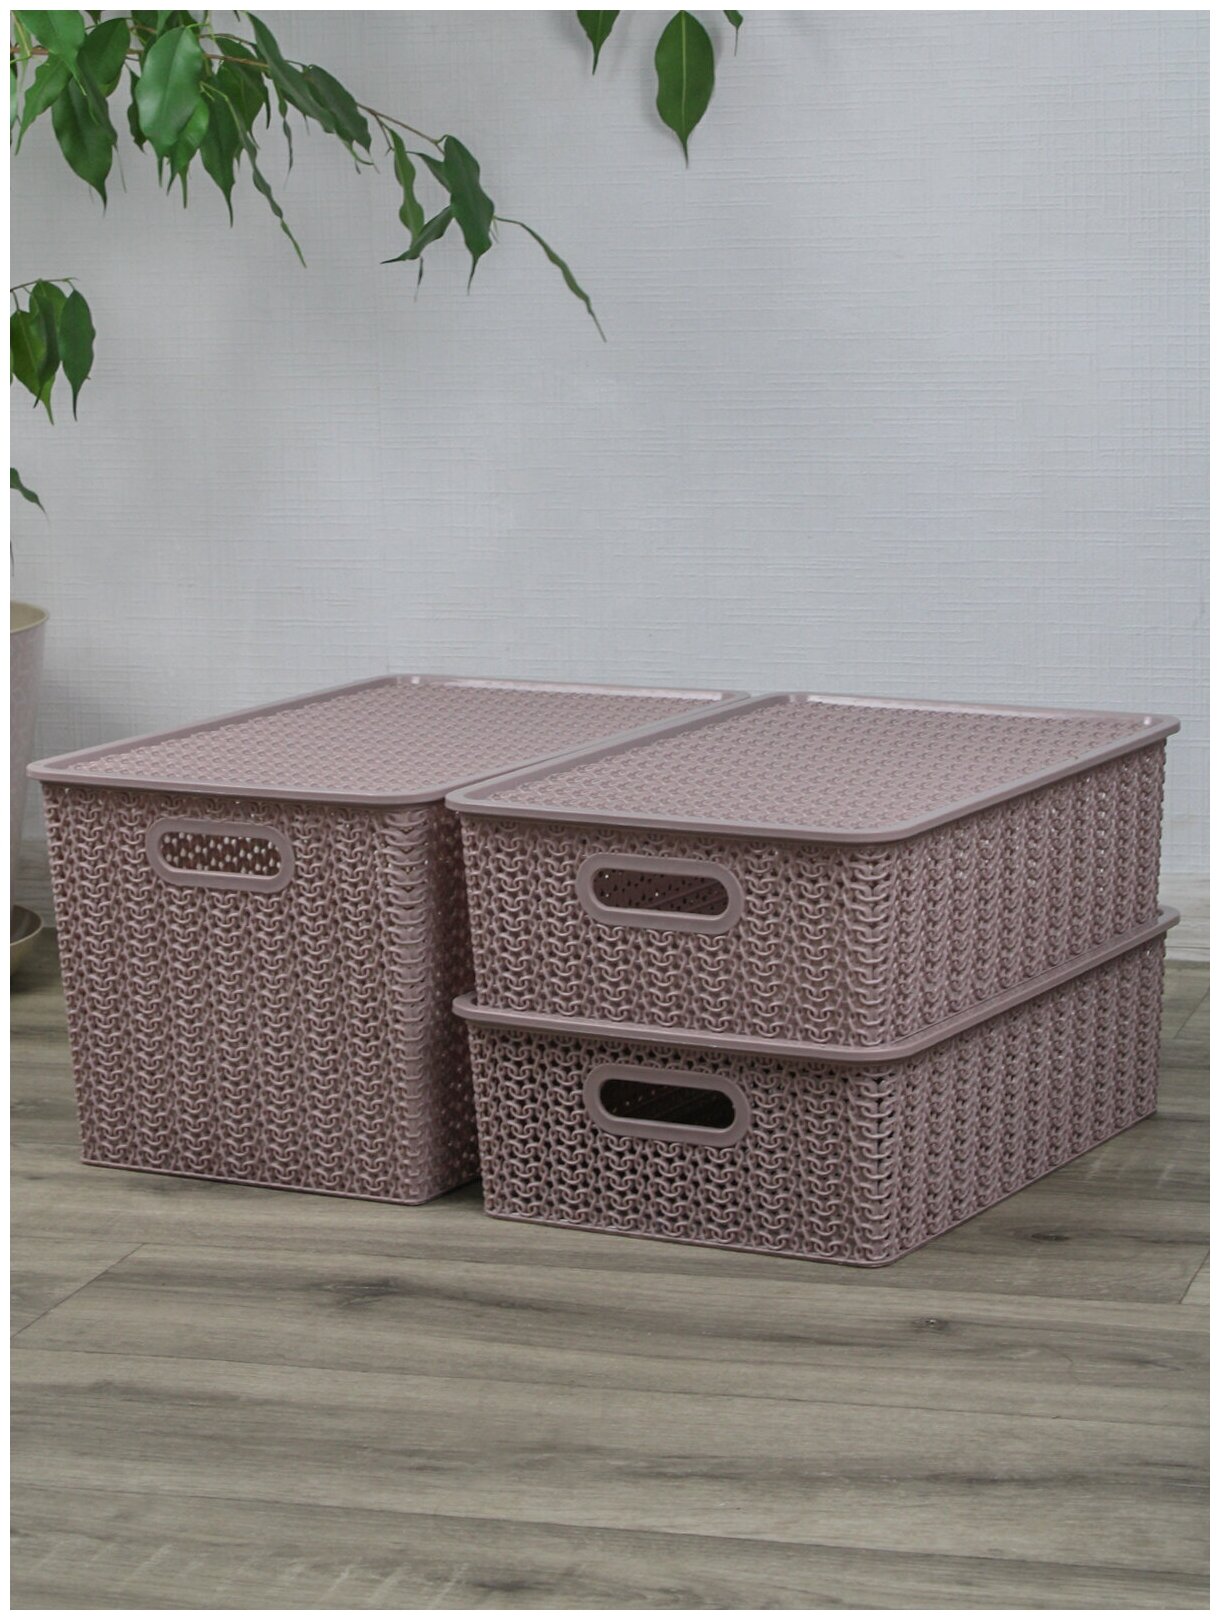 Набор из 3 корзин для хранения Вязь с крышкой 14л - 1 шт, 7,5л - 2 шт / контейнер / хозяйственная коробка, цвет розовый нюд